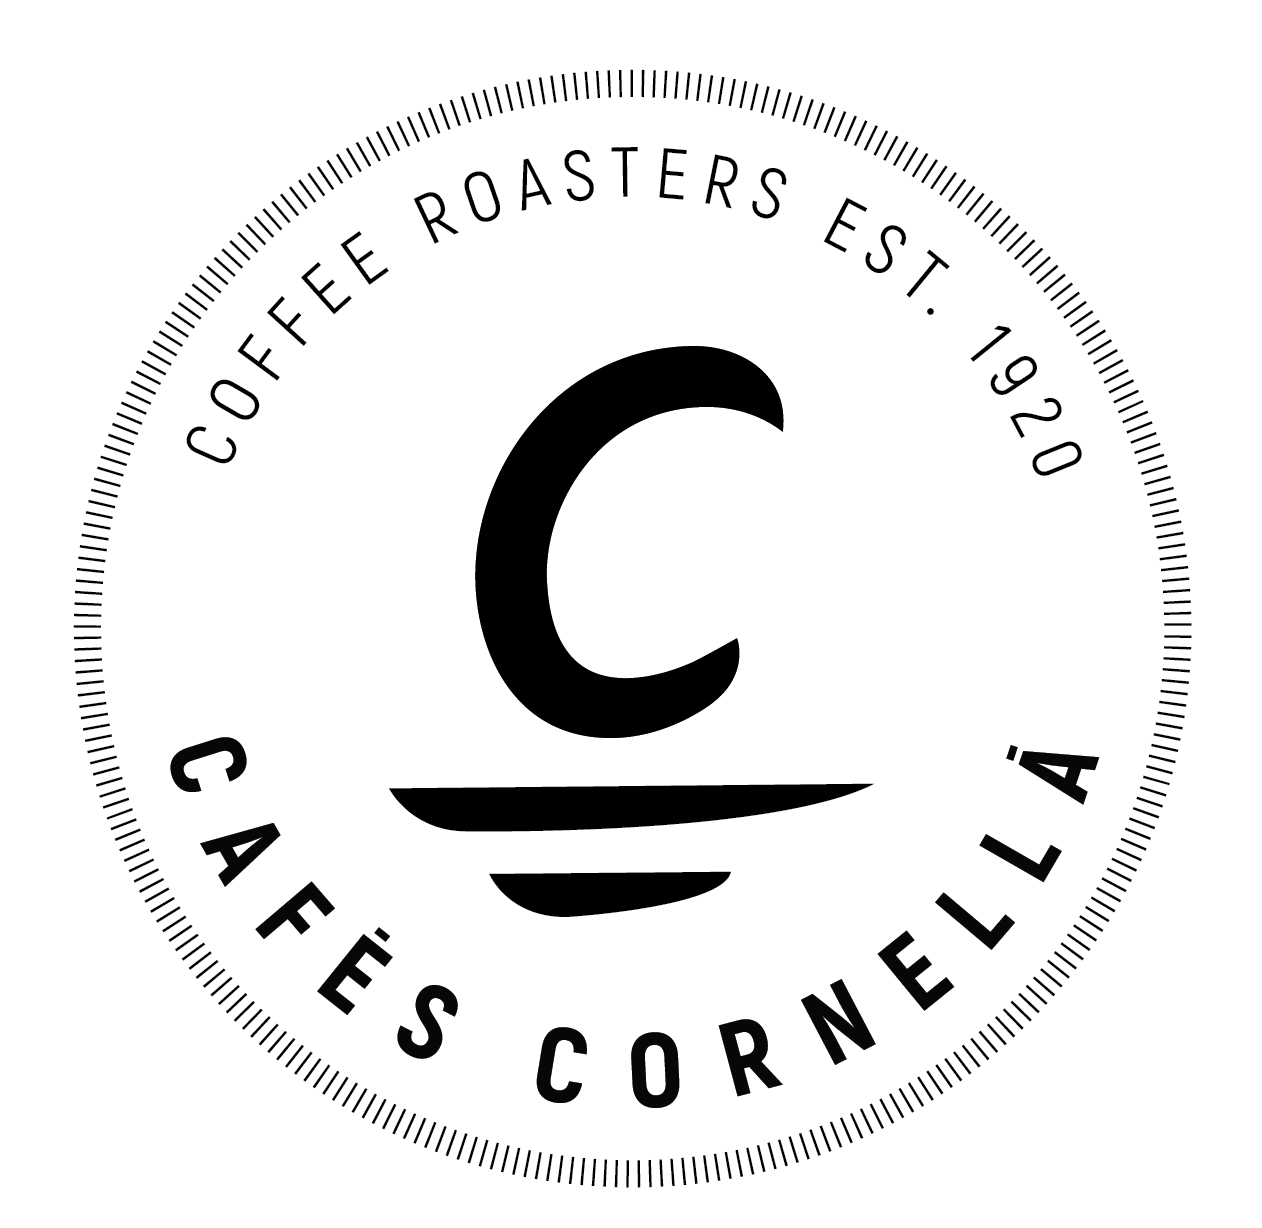 Cafés Cornellá